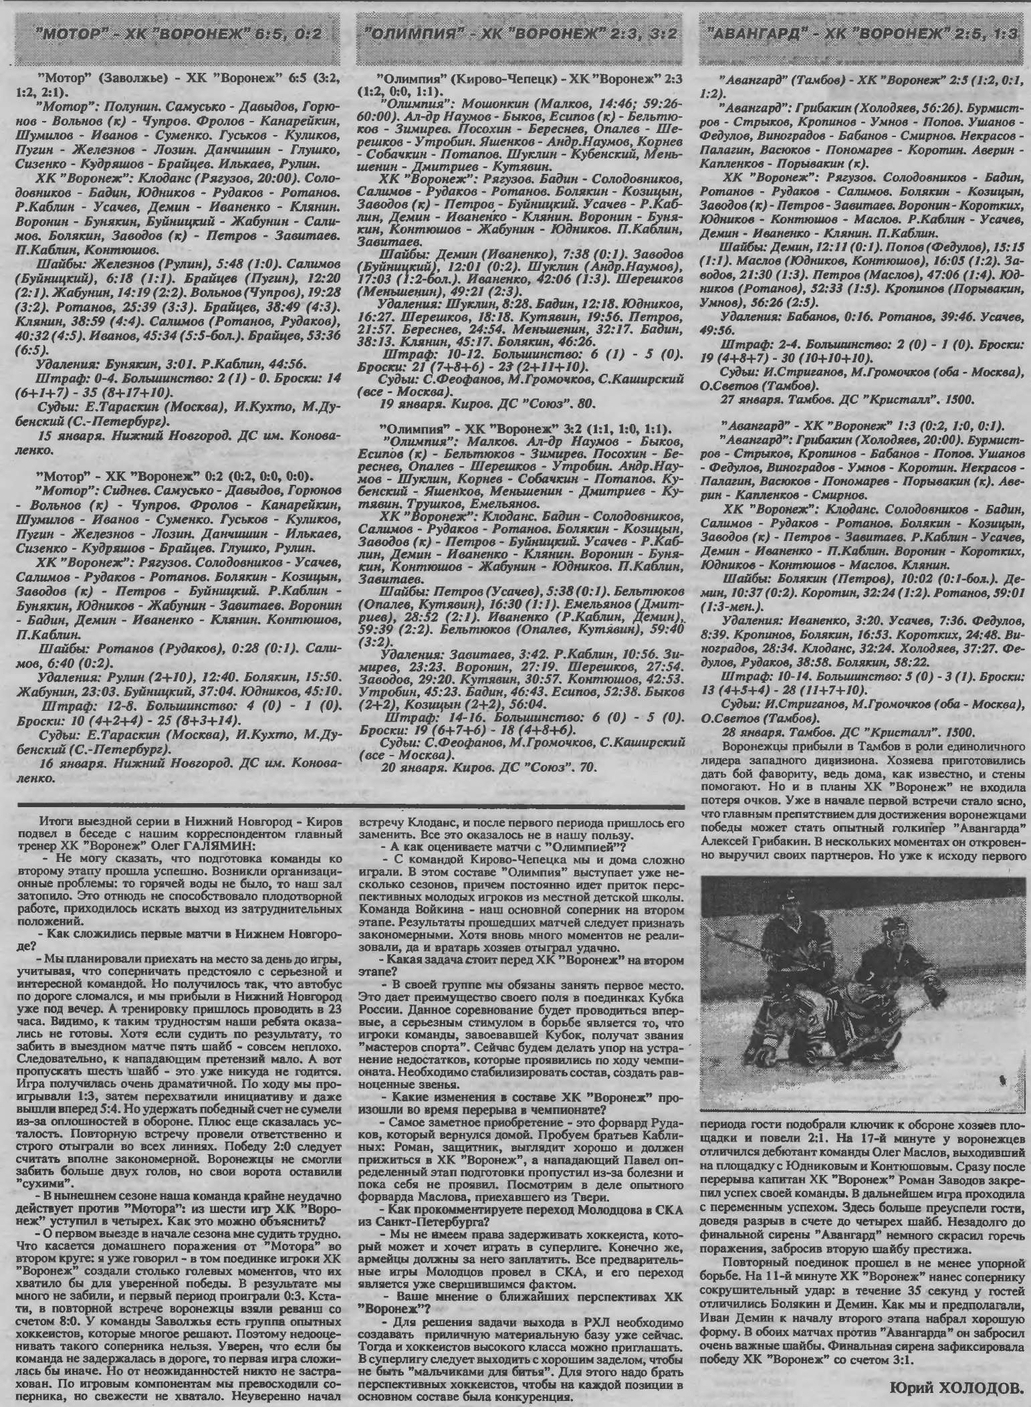 Газета "Игрок" (Воронеж) №3 от 31.01.1997г.